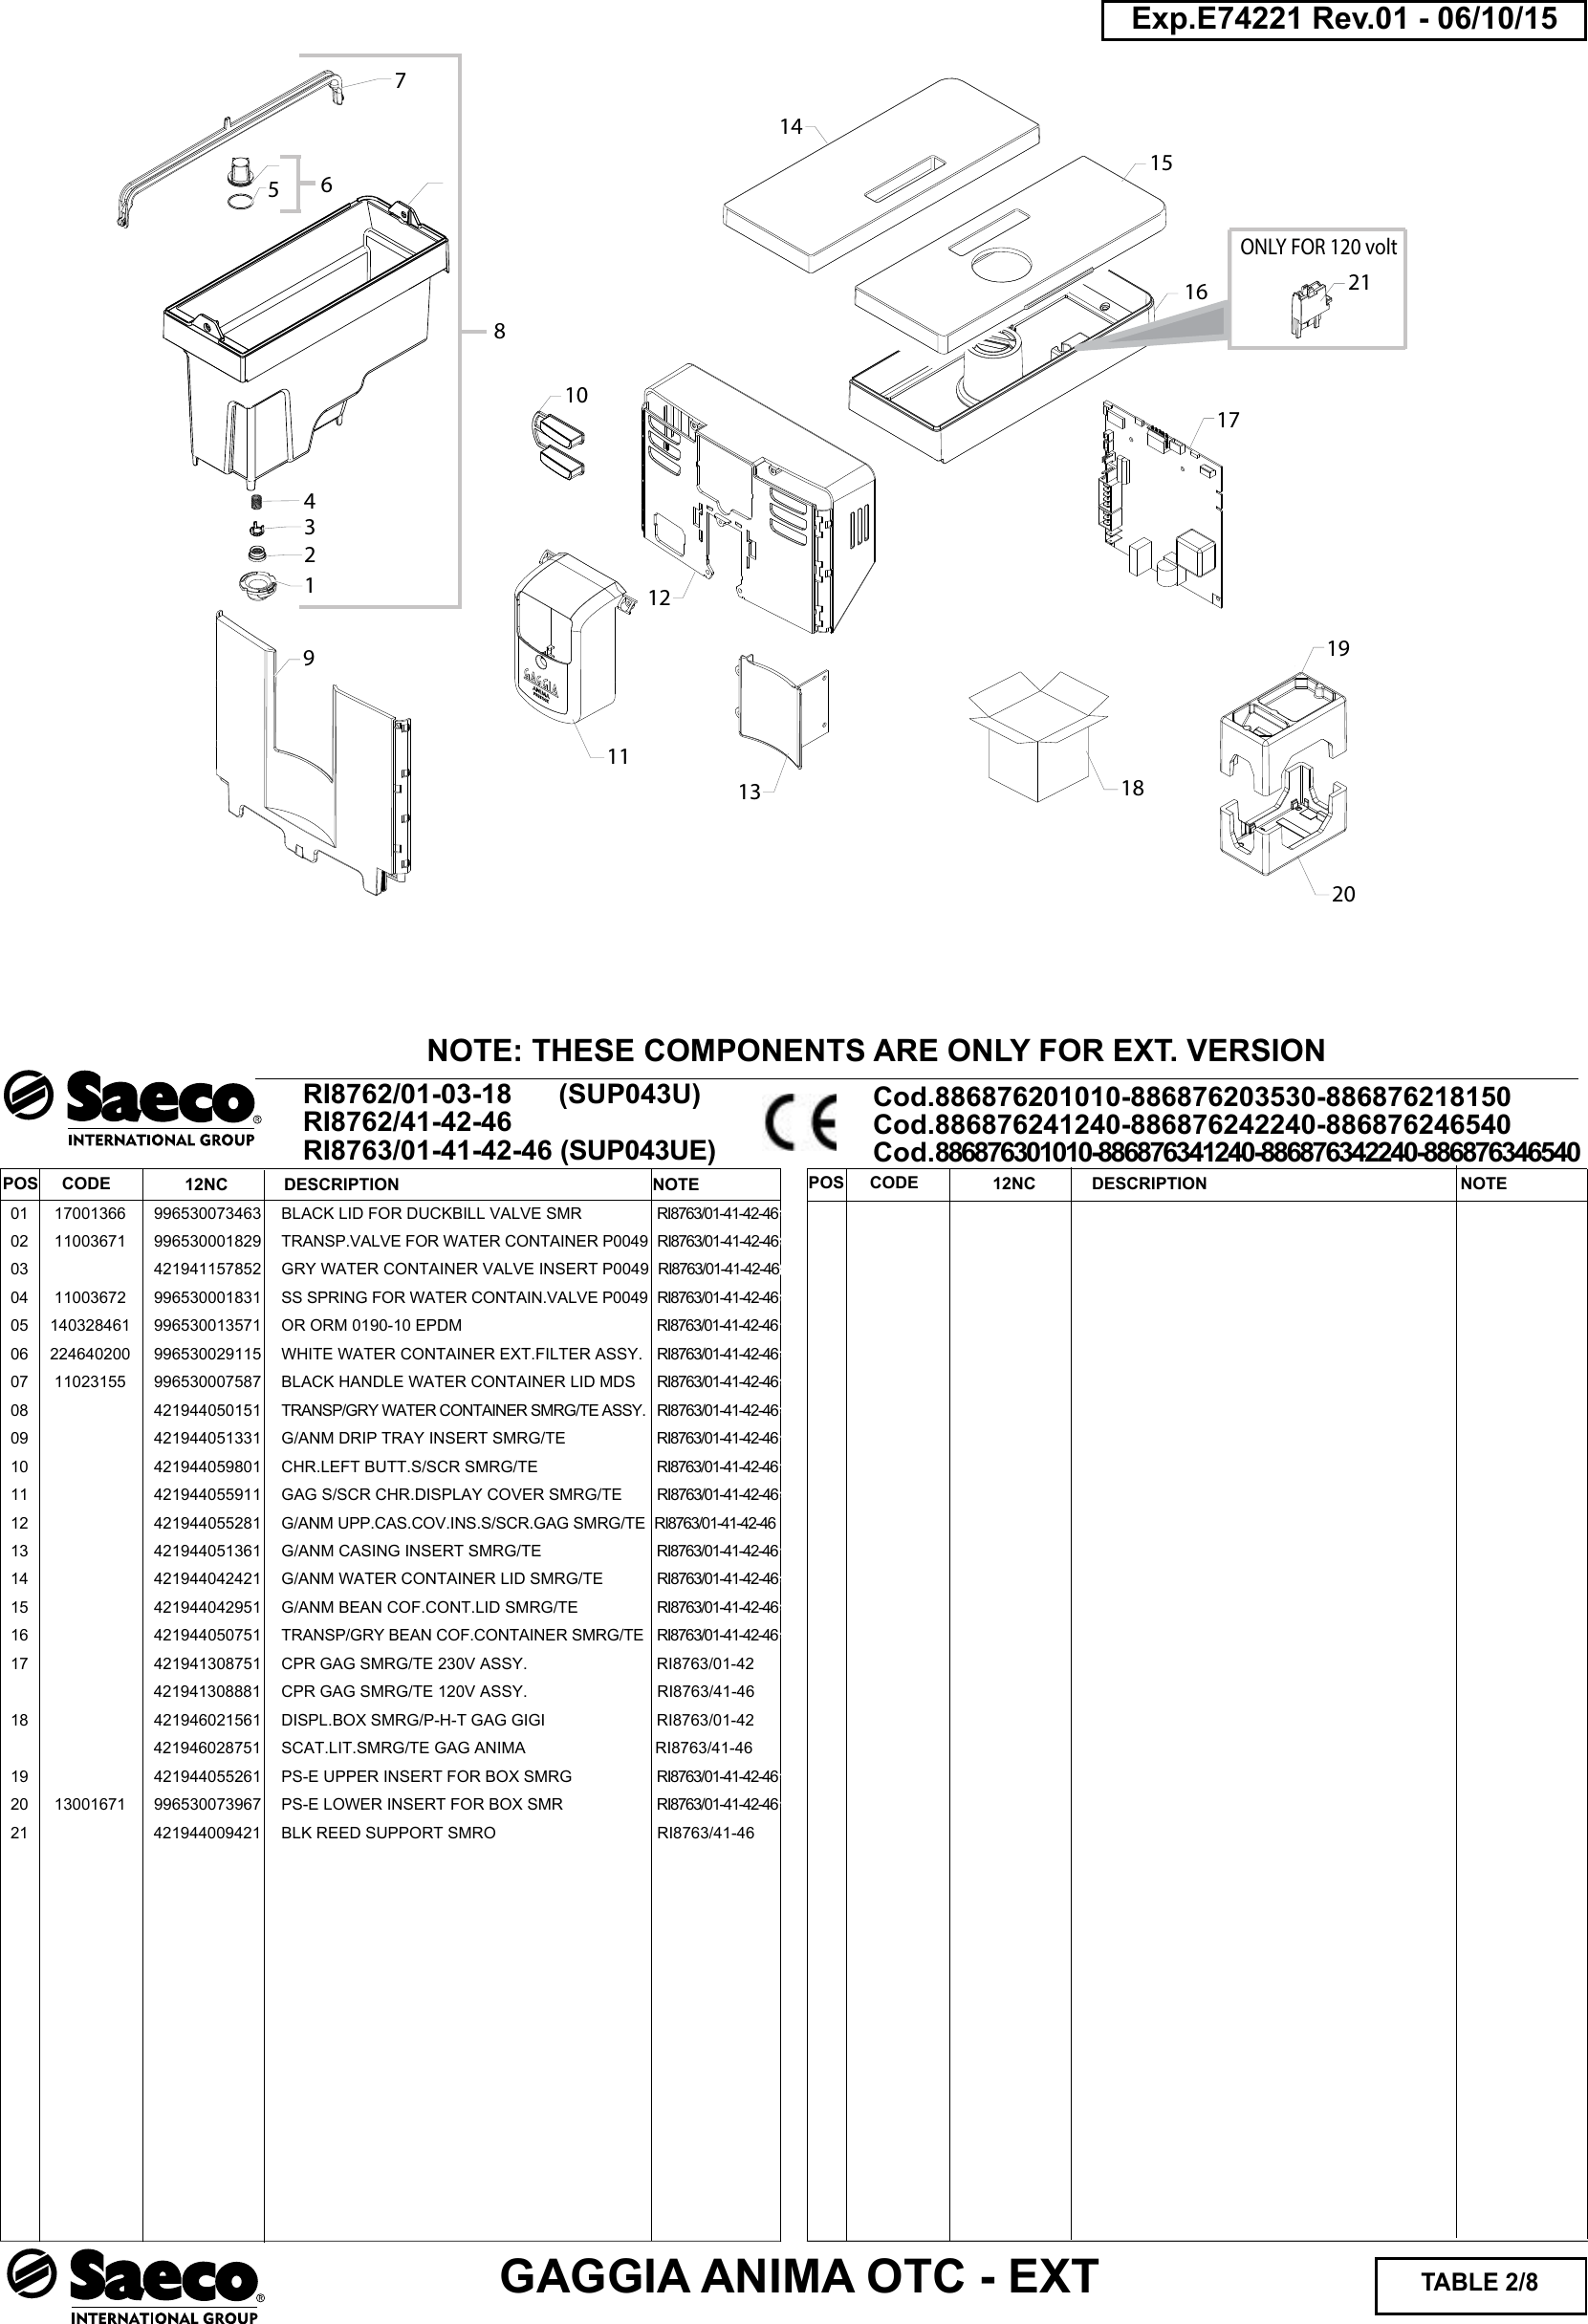 Page 2 of 8 - Gaggia Anima Prestige Parts Diagram User Manual